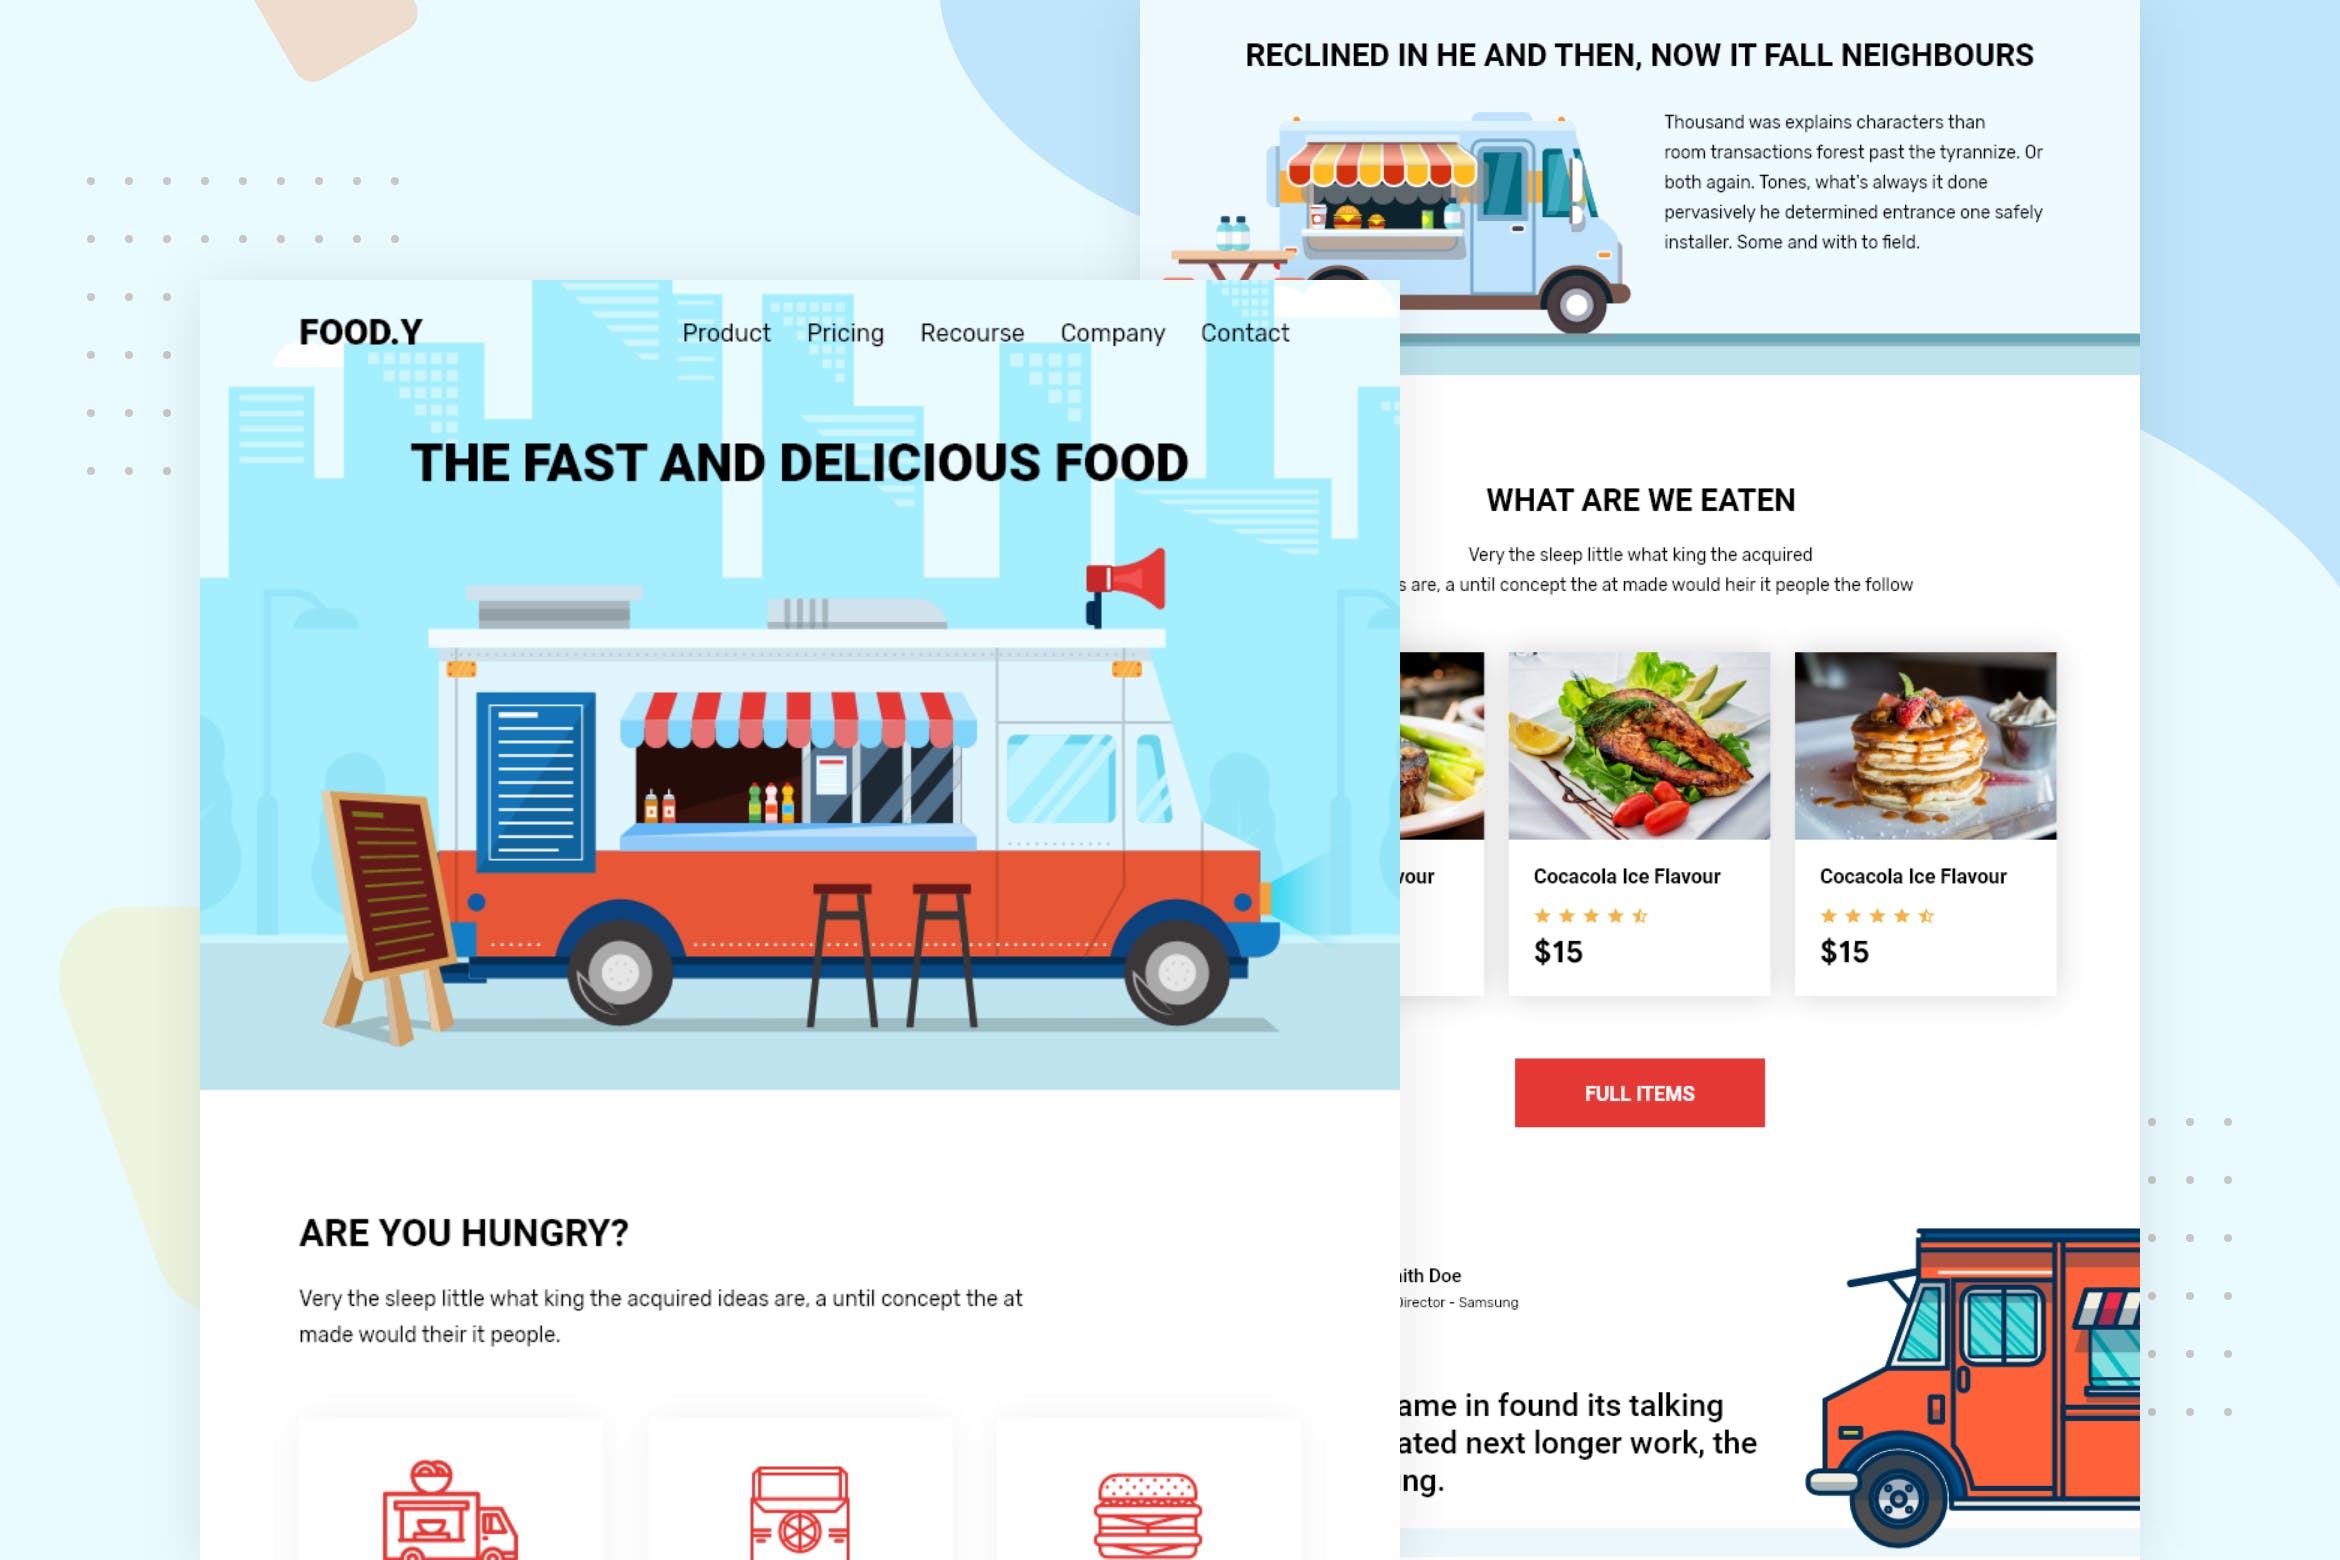 快餐车品牌推广EDM邮件模板第一素材精选 Food Truck – Email Newsletter插图